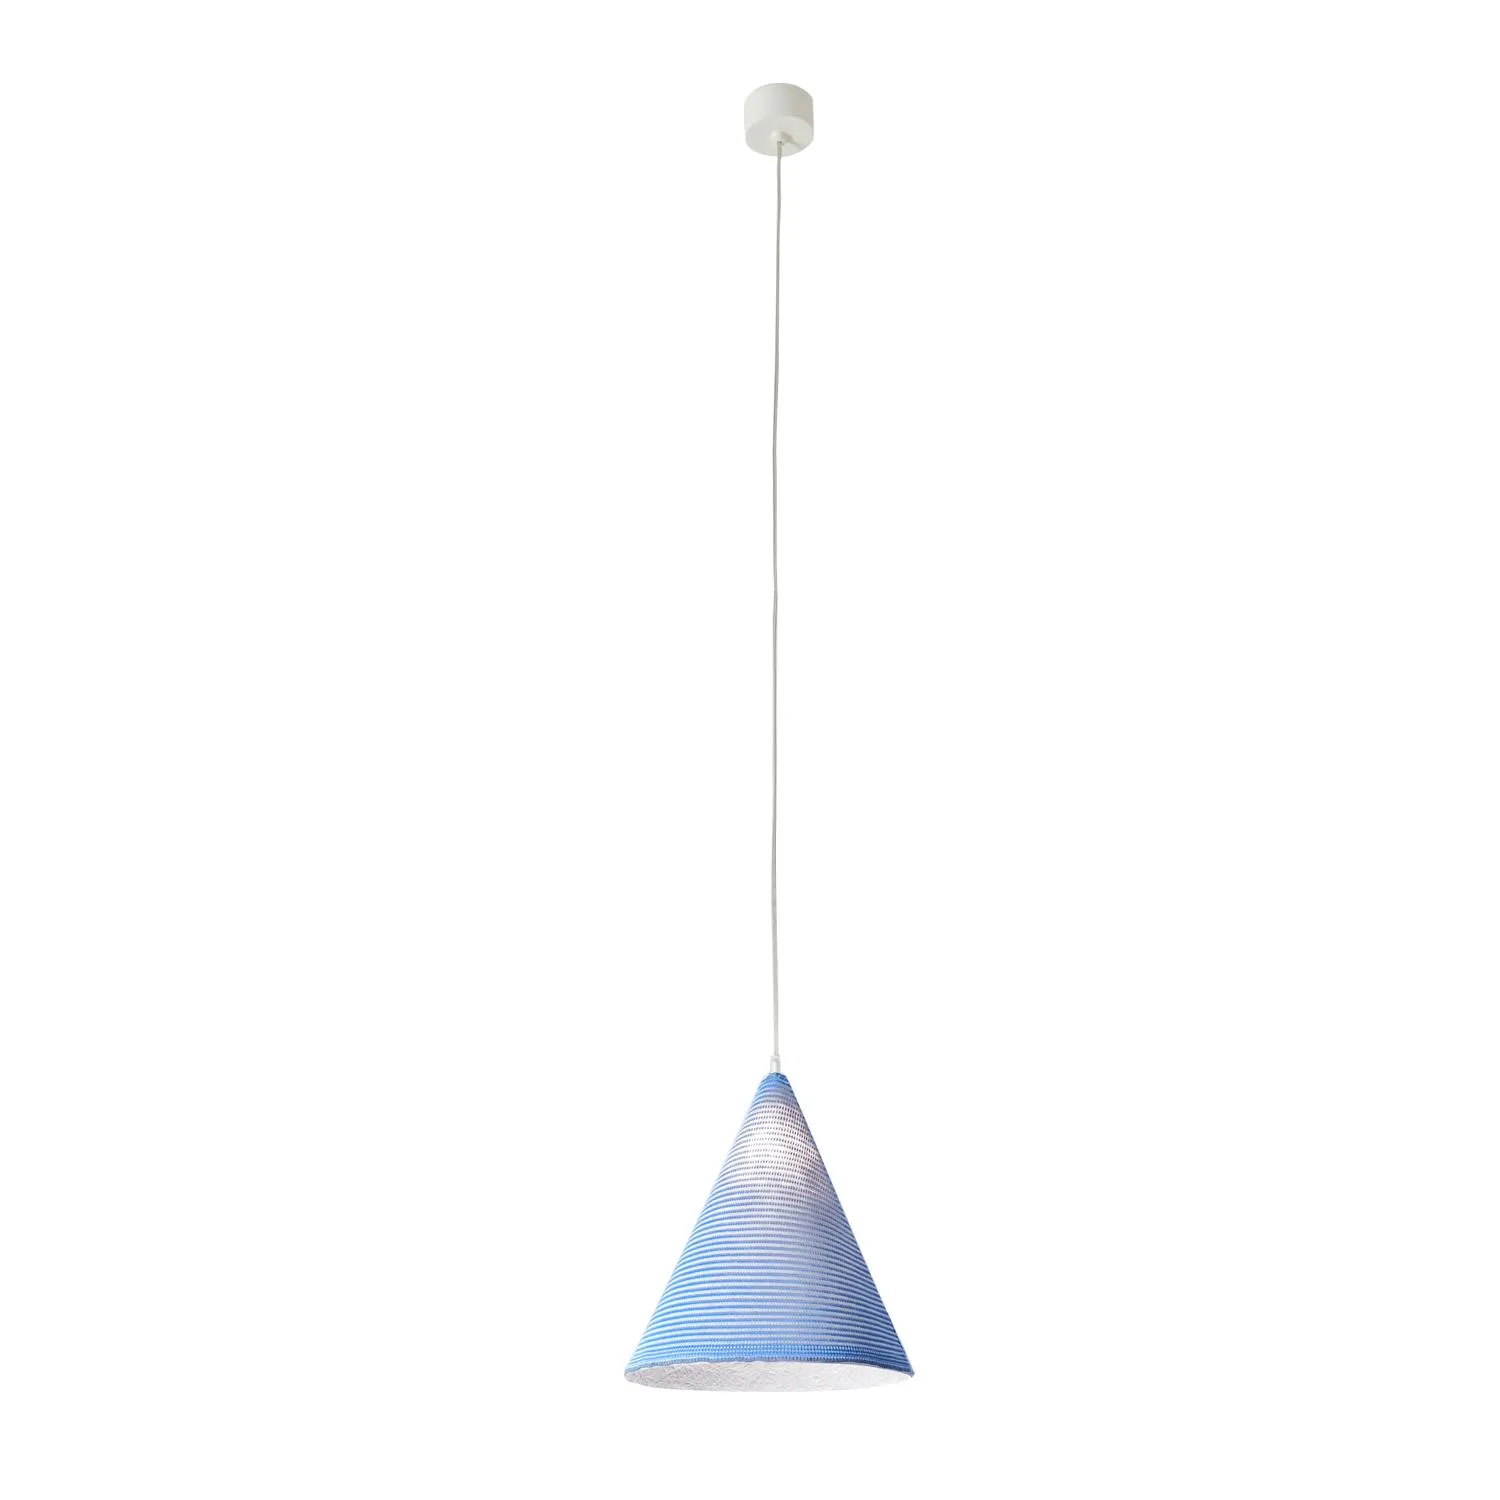 Lampada da Soffitto Jazz stripe colore blu Altezza 31 cm Diametro 29 cm, realizzata in laprene, nebulite, lana 100%